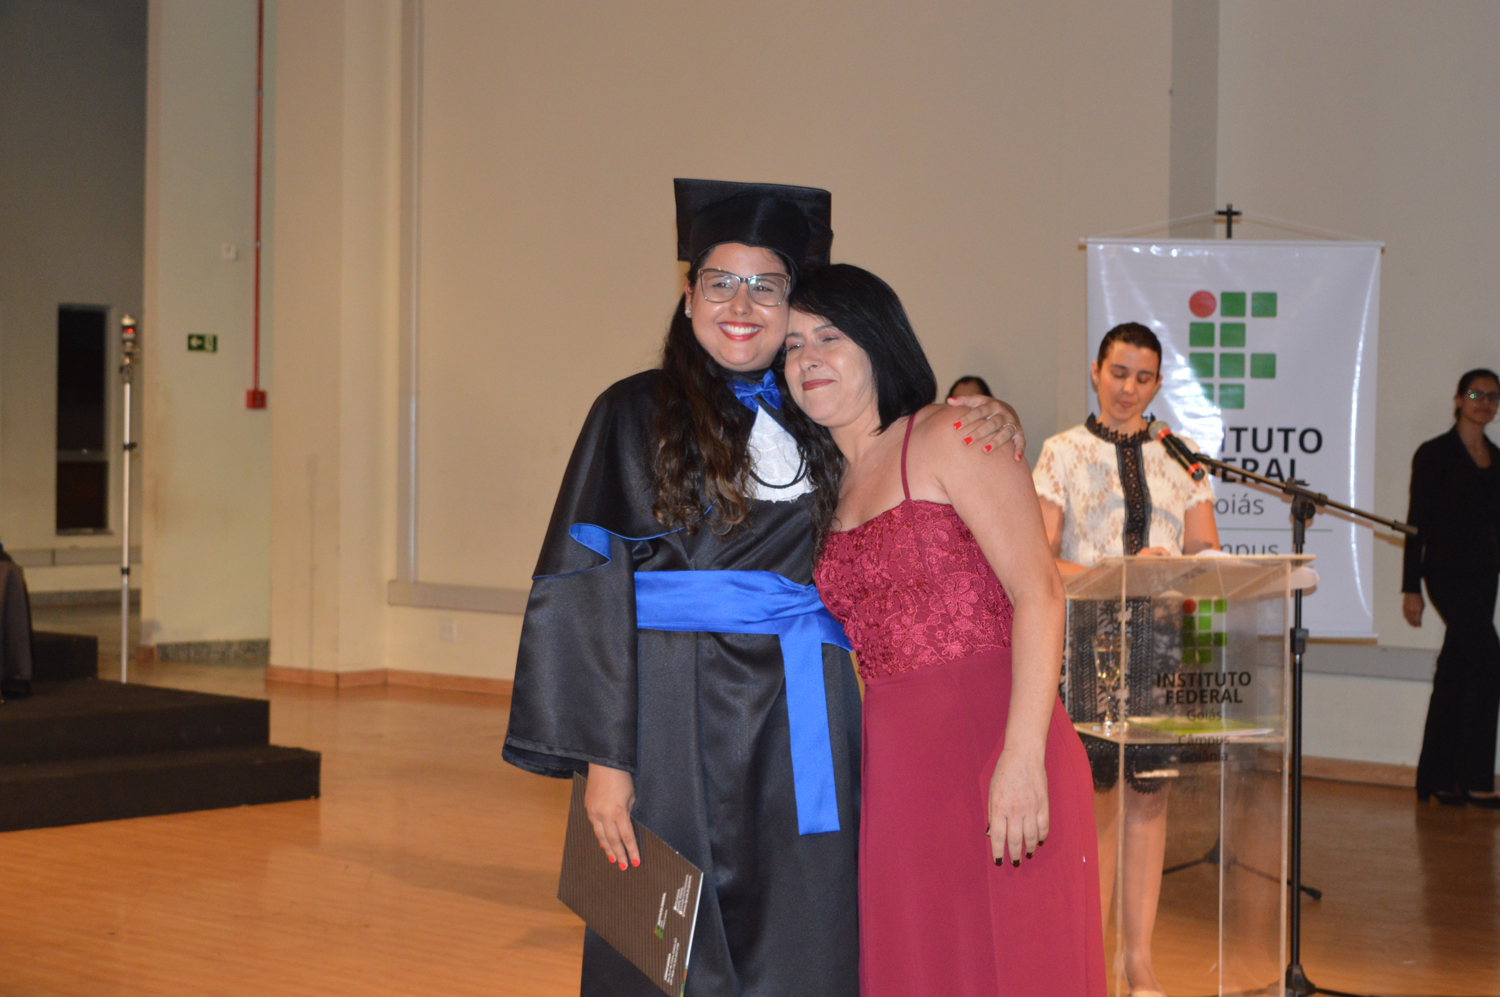 A servidora e formanda no curso de Bacharelado em Sistemas de Informação, Danielle Almeida, recebeu o diploma da mãe, Ivanilda Gomes